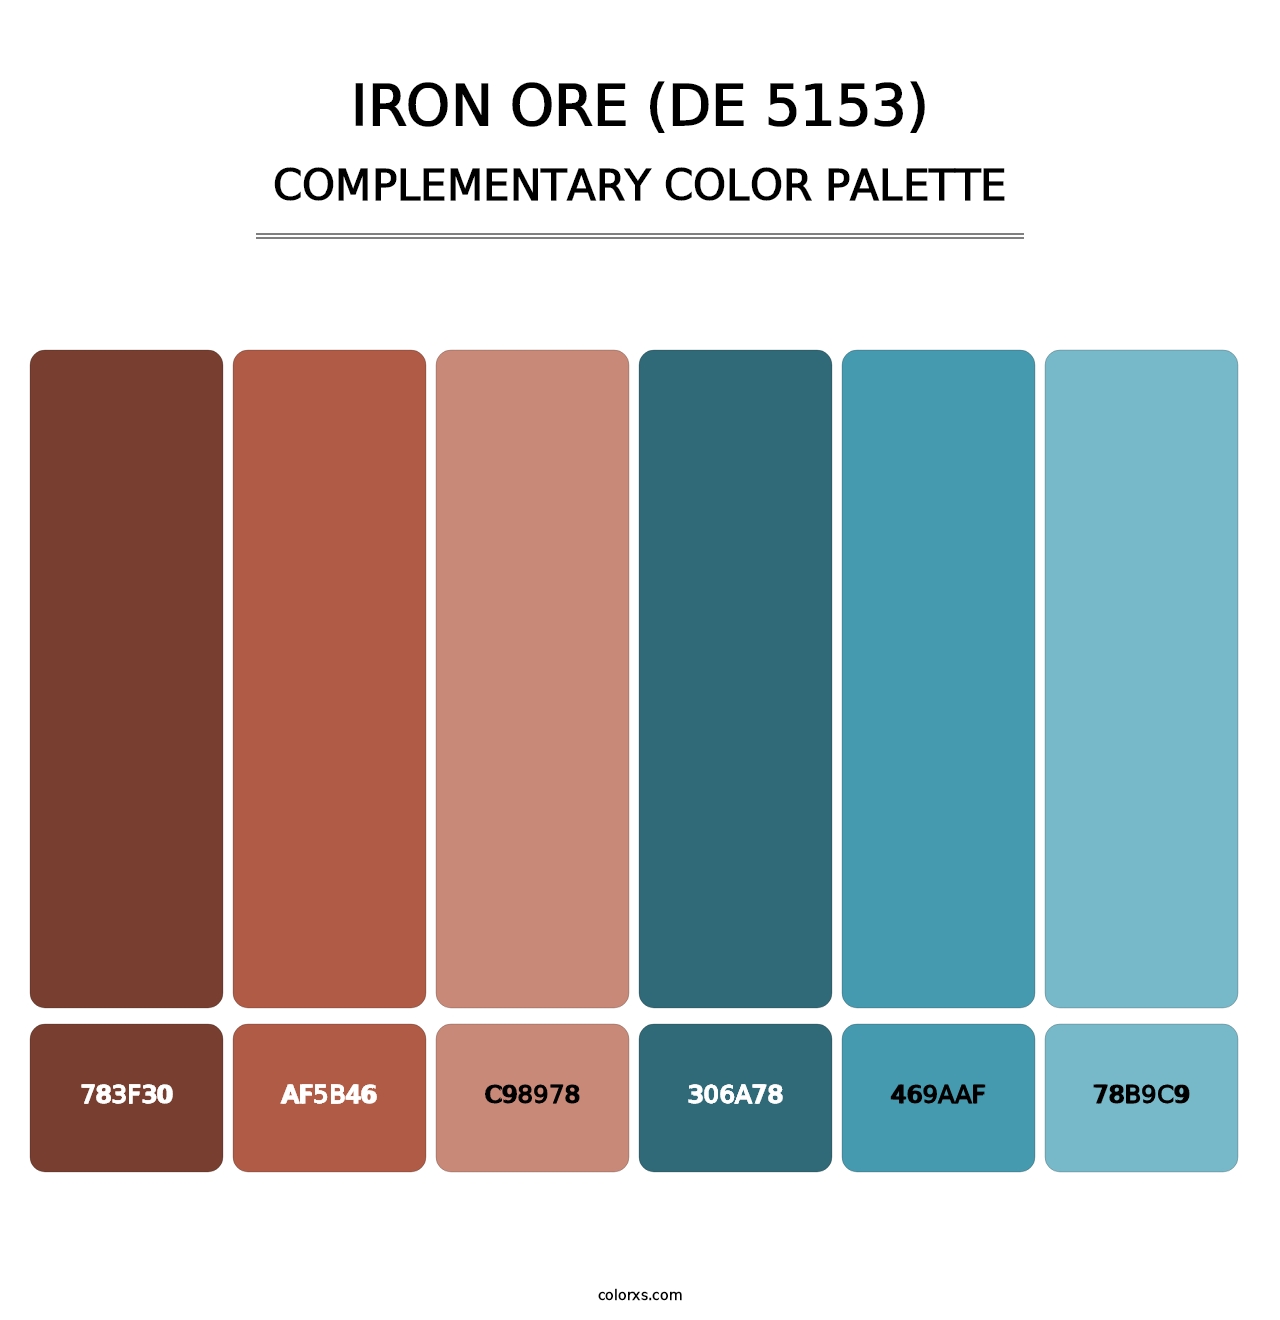 Iron Ore (DE 5153) - Complementary Color Palette